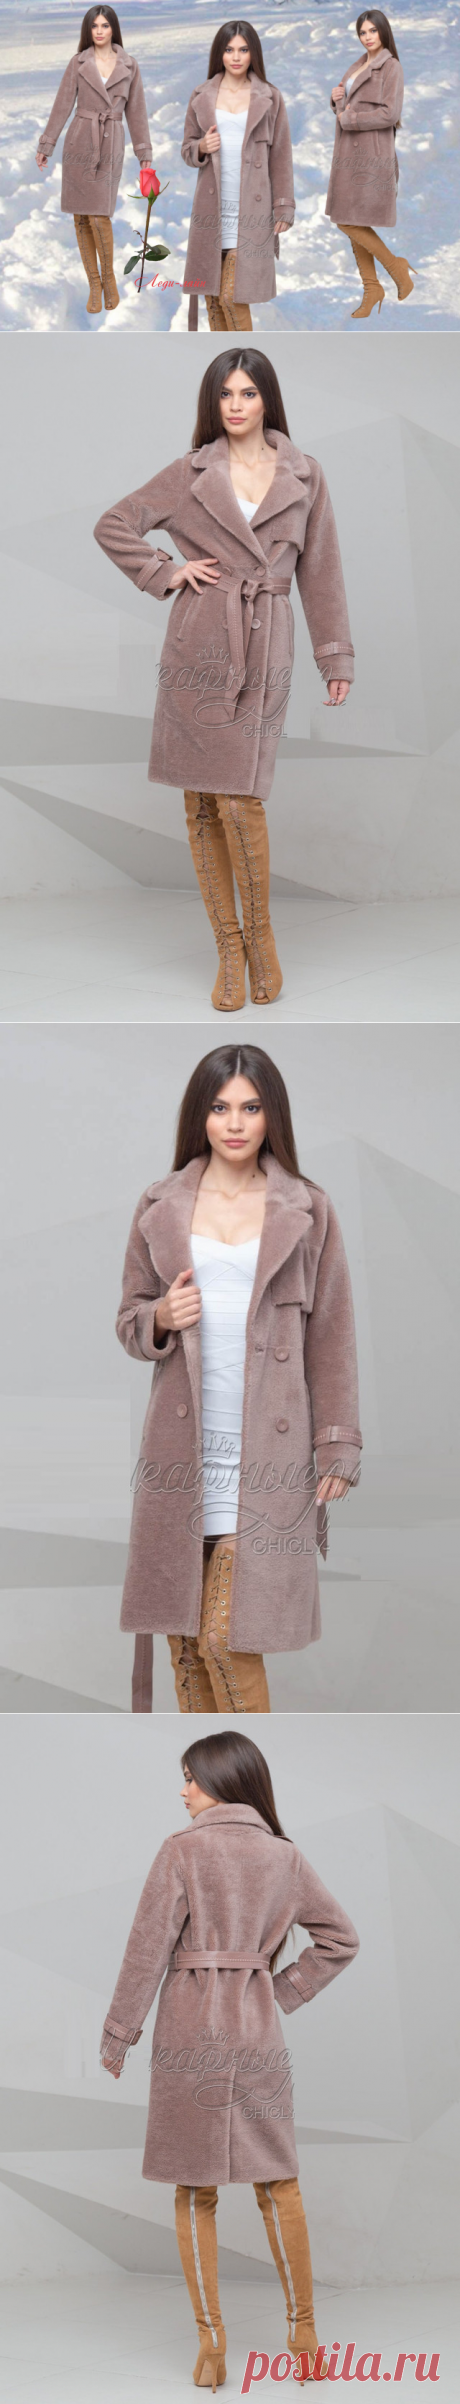 Зимнее женское шерстяное пальто SH-M-11160: продажа, цена в Харькове. пальто женские от "Интернет-магазин Леди-лайн" - 590582069